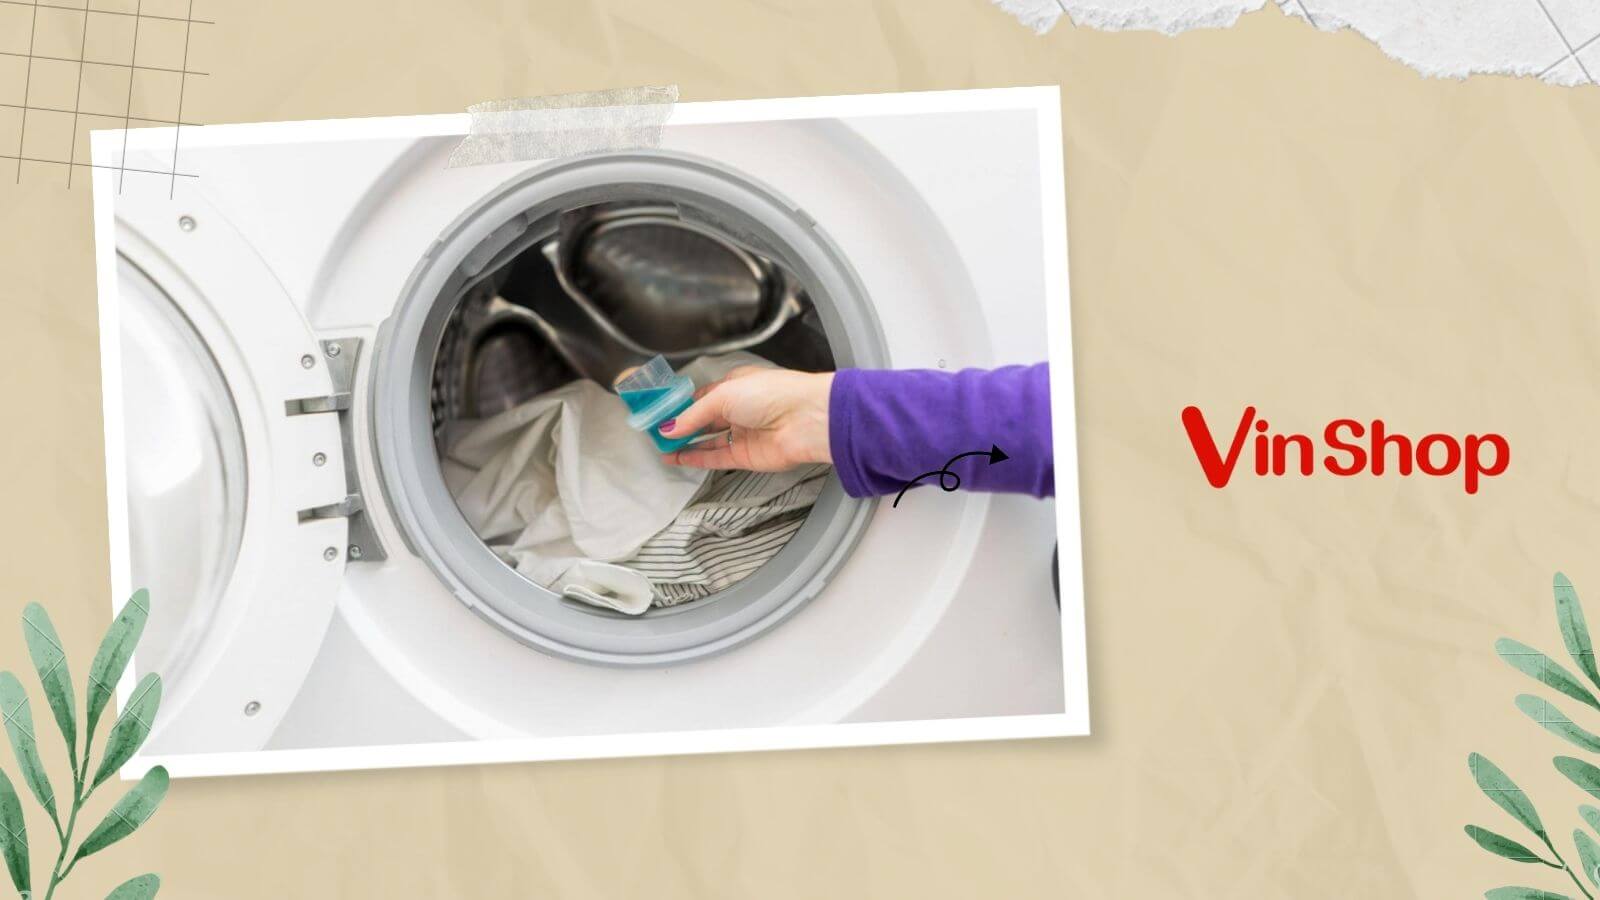 Bí quyết cách sử dụng nước giặt cho máy giặt cửa ngang hiệu quả và tiết kiệm hơn